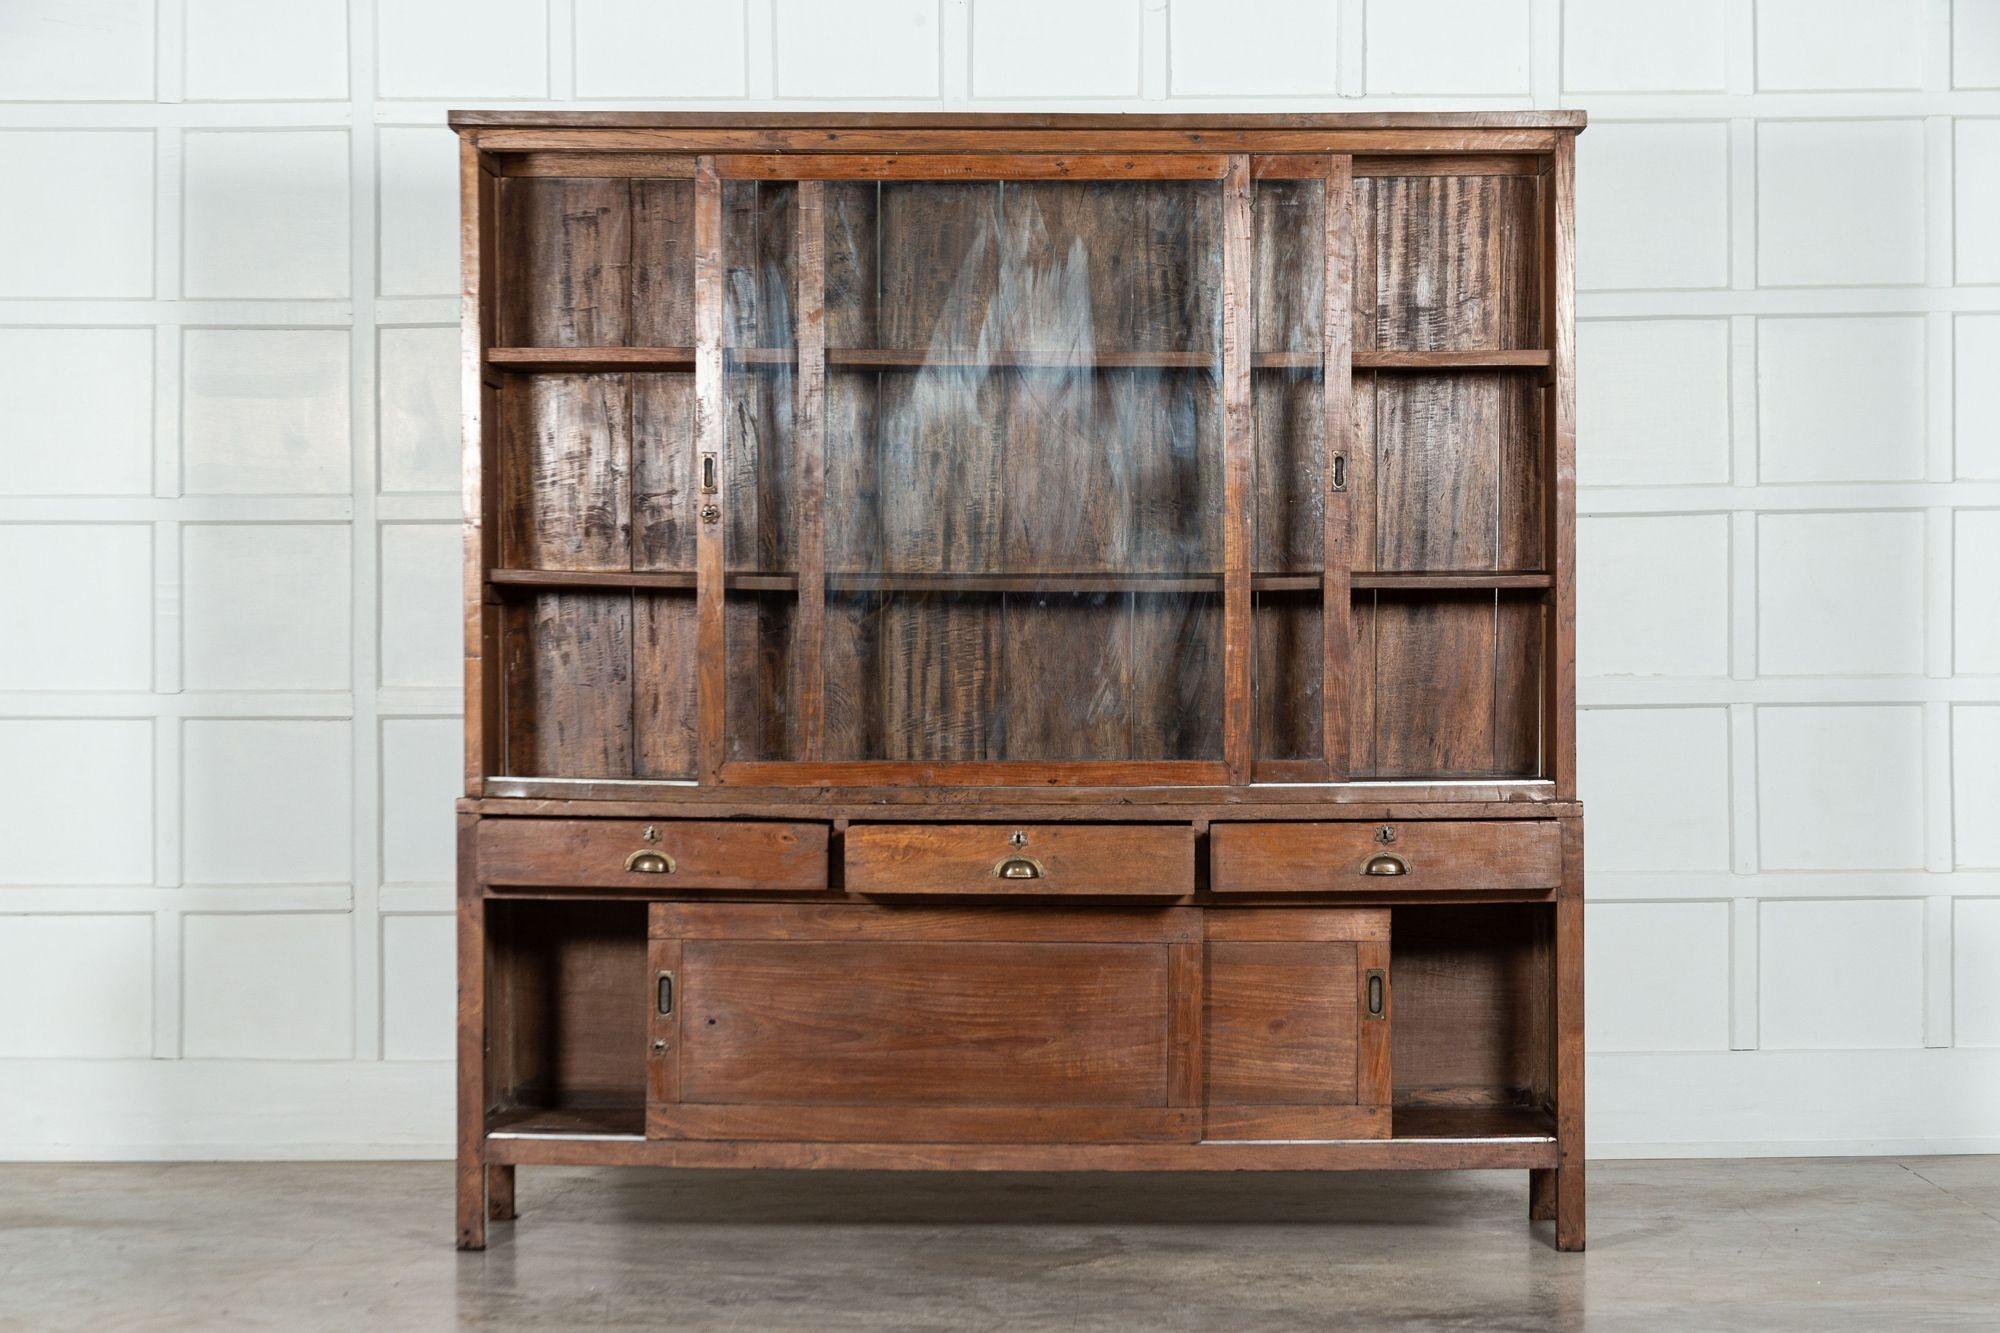 vers 1900
Grand meuble de rangement en chêne vernissé français Haberdashery Shop
sku 1507
L204 x P50 x H203 cm